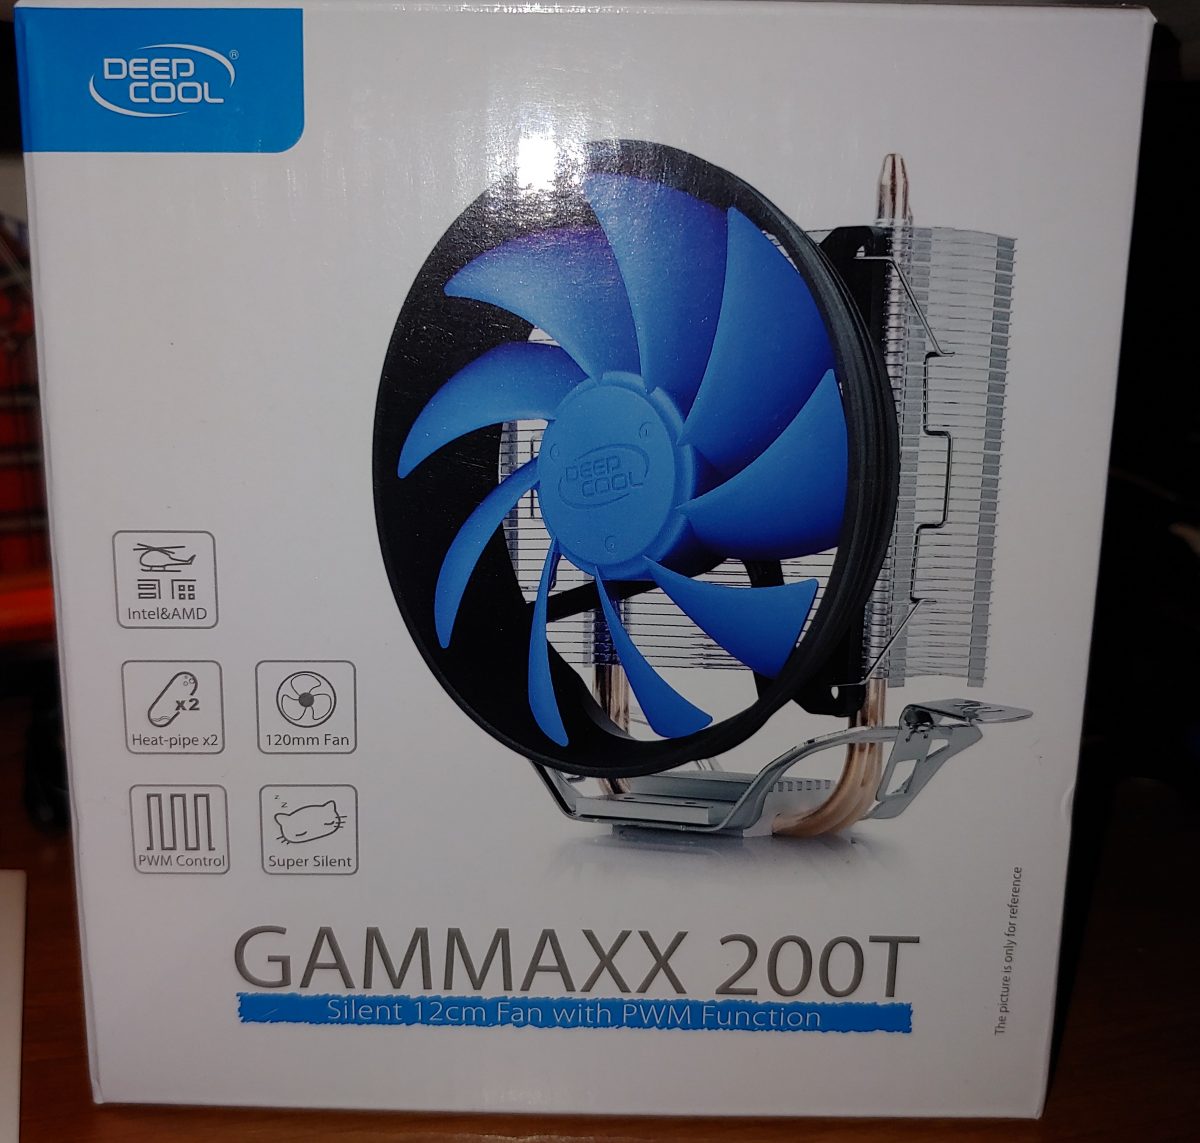 GAMMAXX 200T